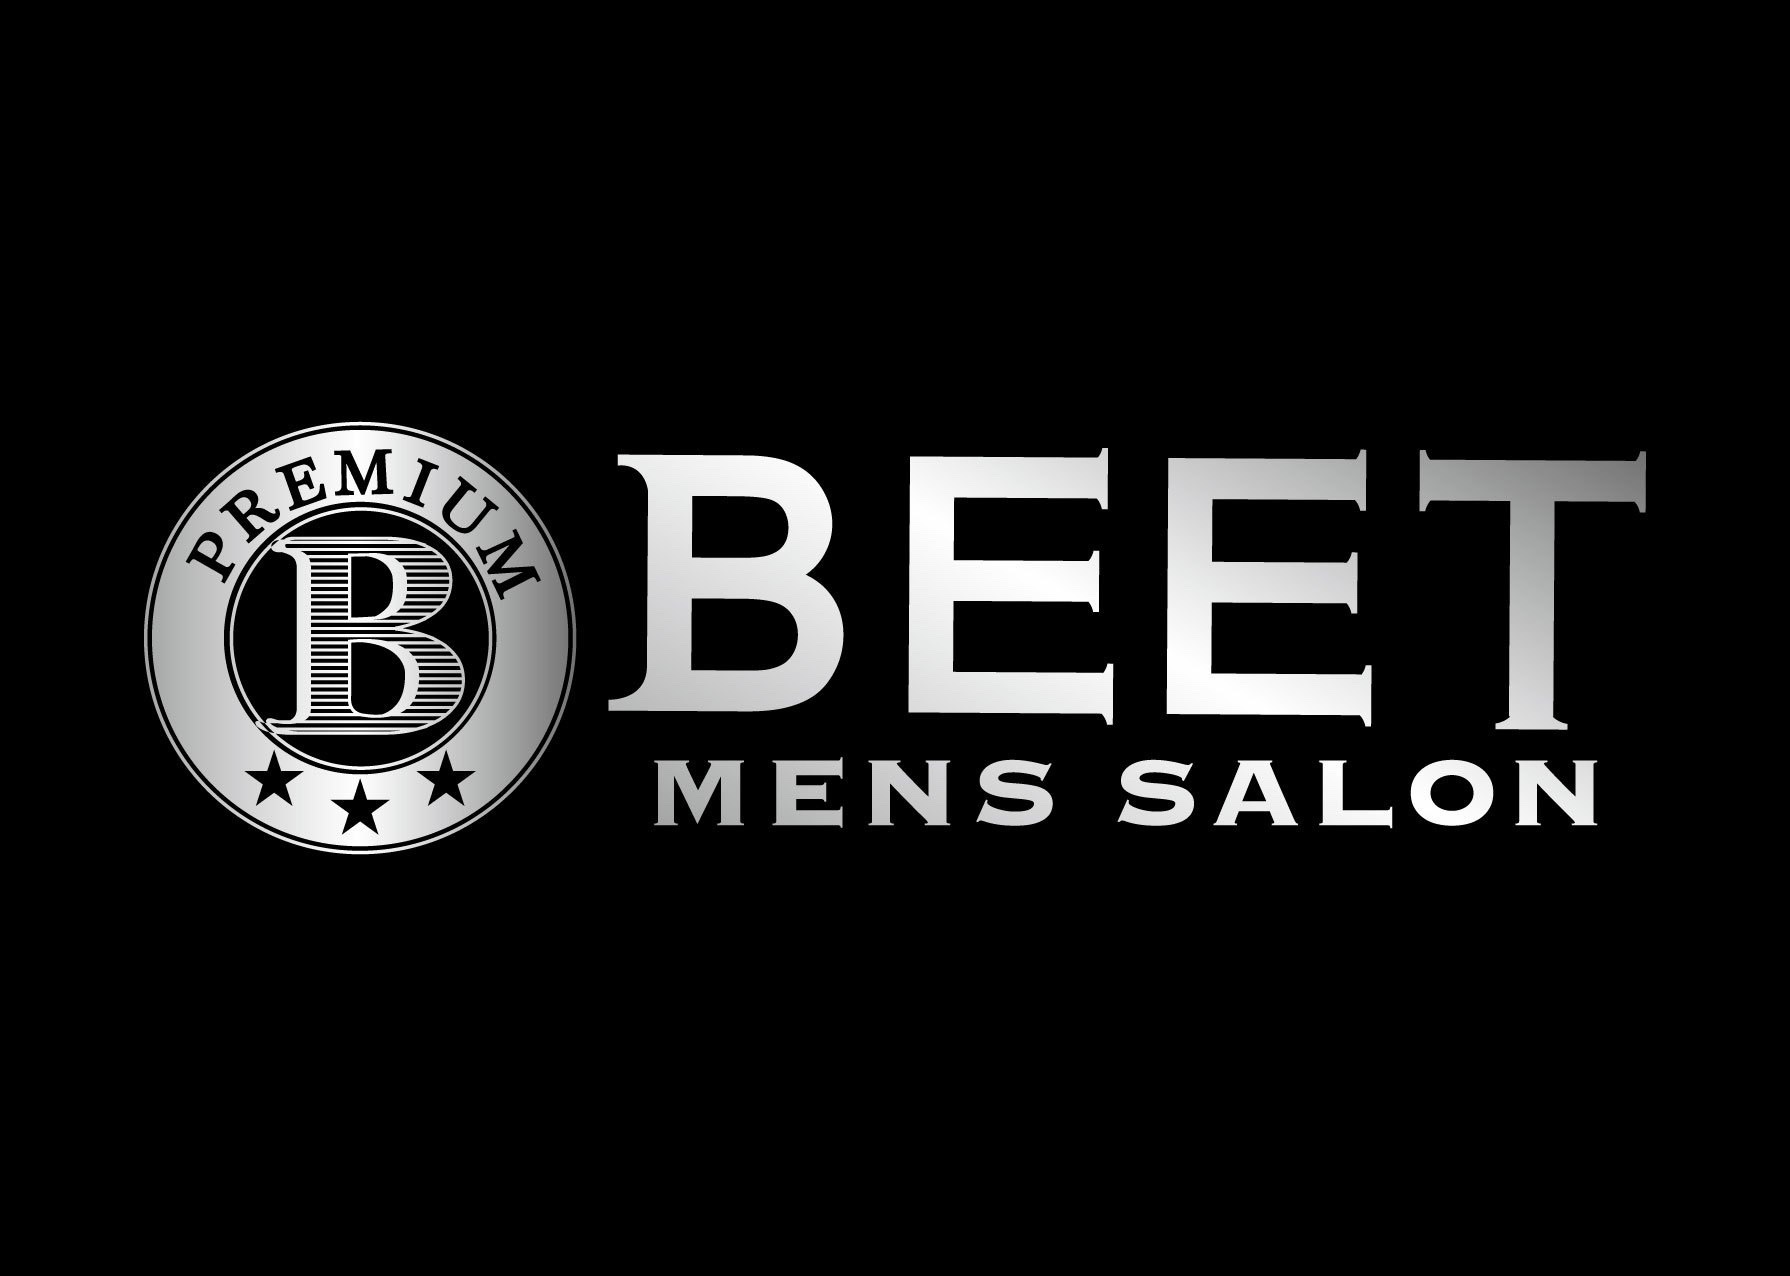 美容室でもない 床屋でもない 新感覚メンズサロン Beet Premium が大阪駅前第3ビルに6月27日オープン 女性スタイリストによる女性目線のアドバイスを提案 株式会社l Bホールディングスのプレスリリース